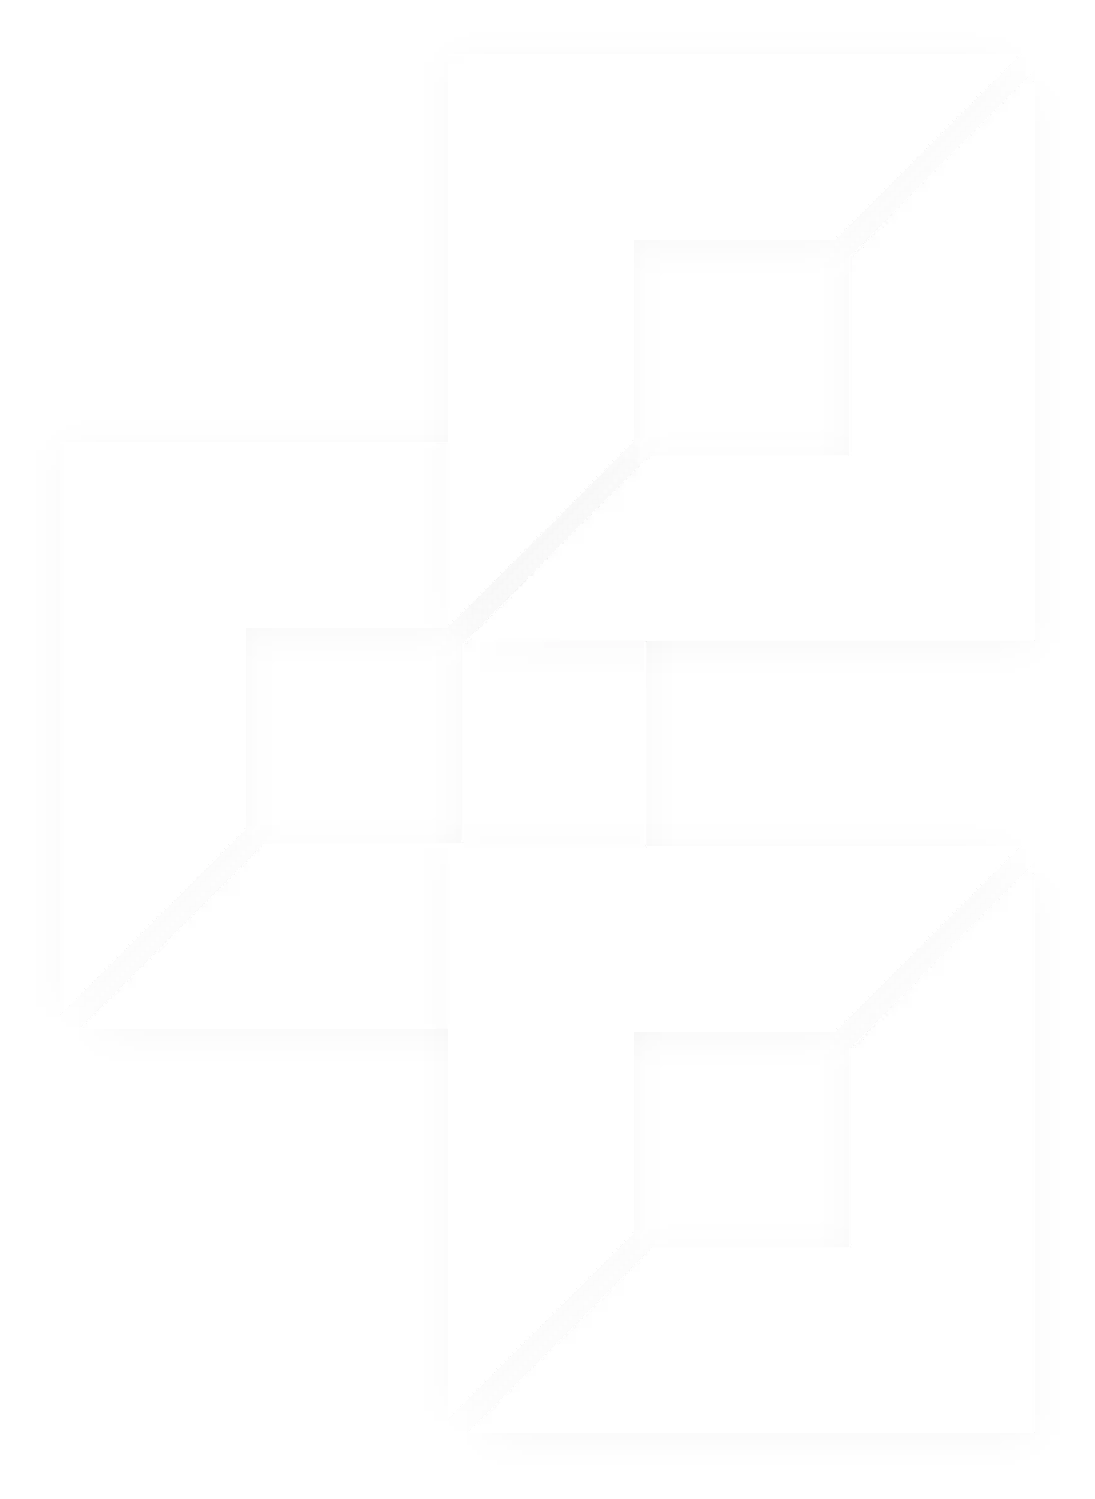 Logo Edge parallax shape